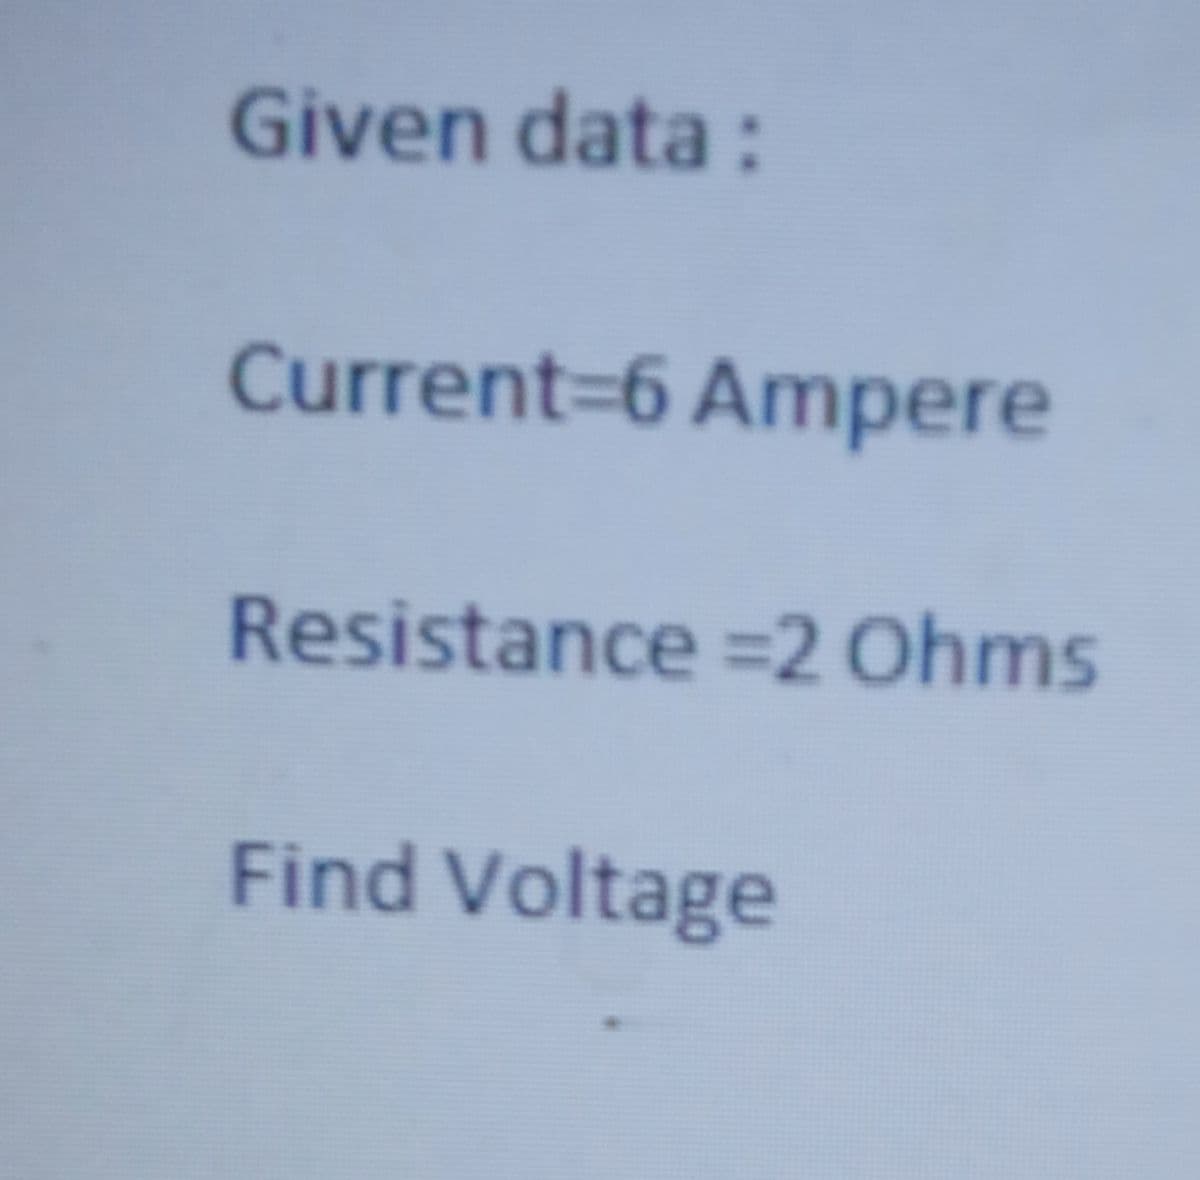 Given data:
Current=6 Ampere
Resistance =2 Ohms
Find Voltage
